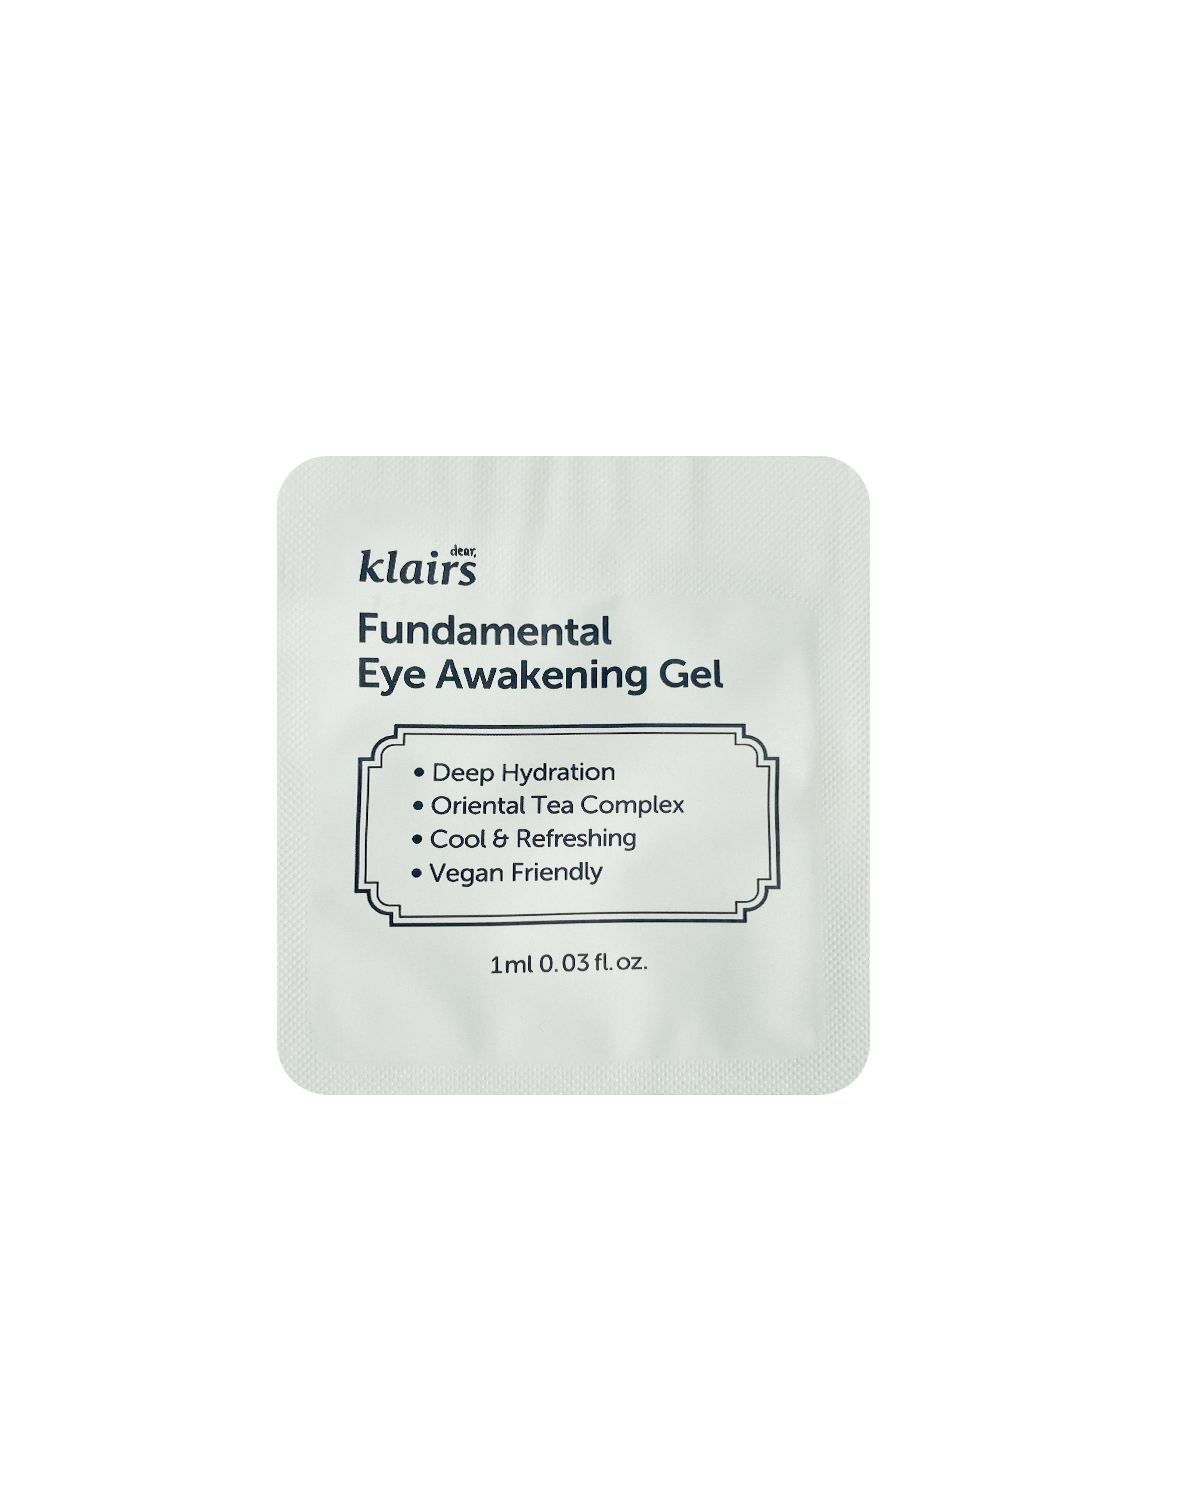 KLAIRS Fundamental Eye Awakening Gel Sample 1 ml